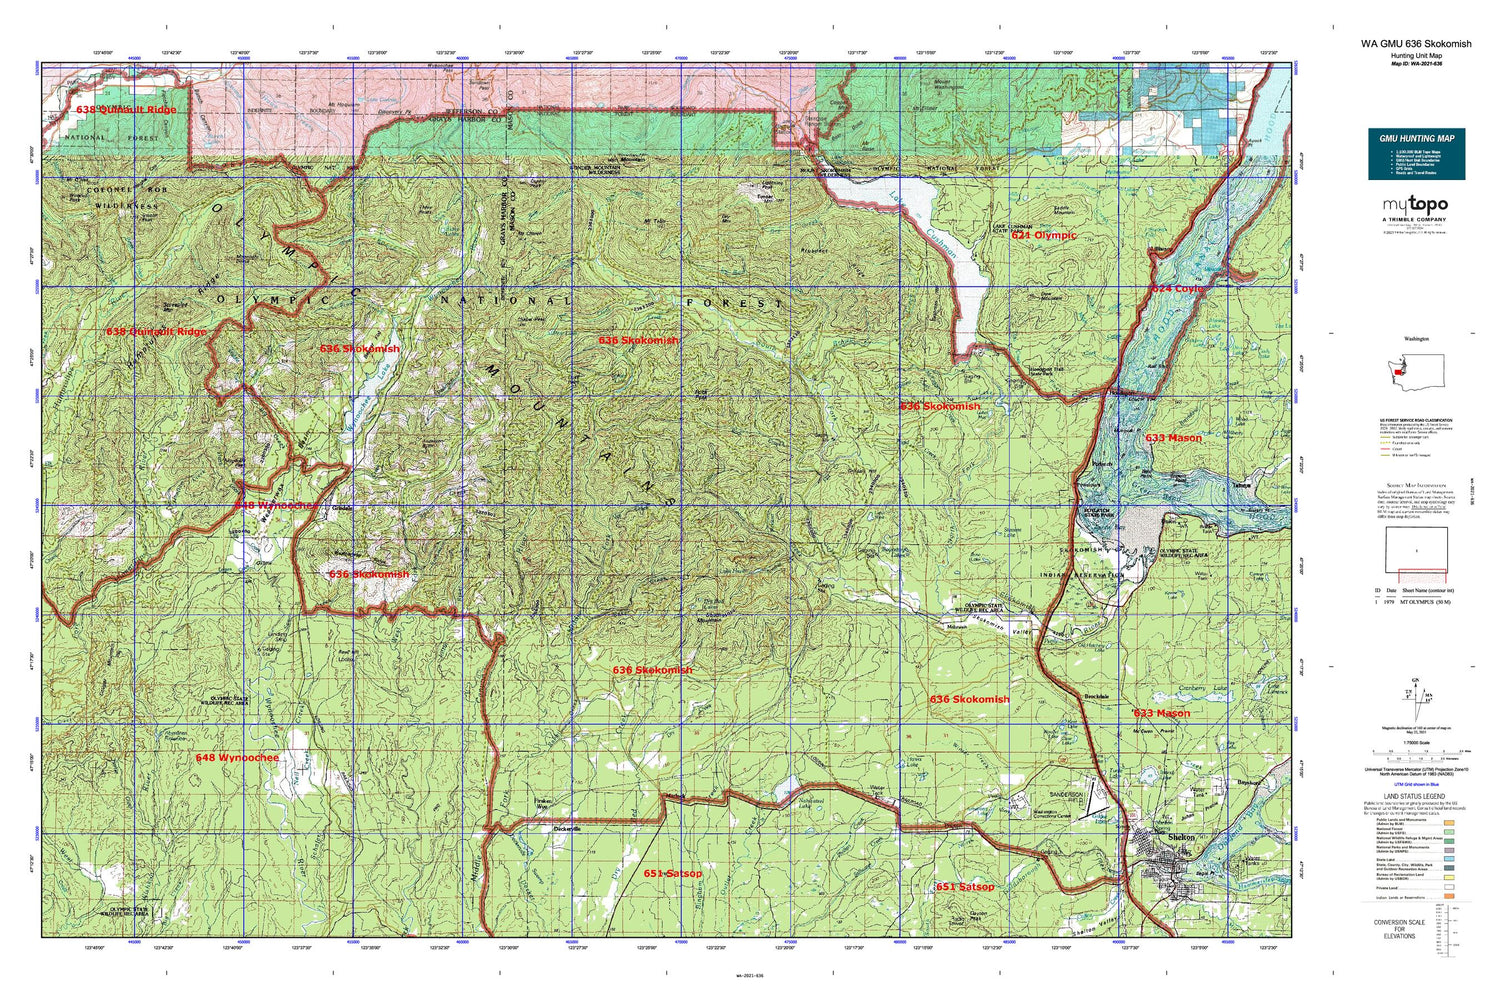 Washington GMU 636 Skokomish Map Image